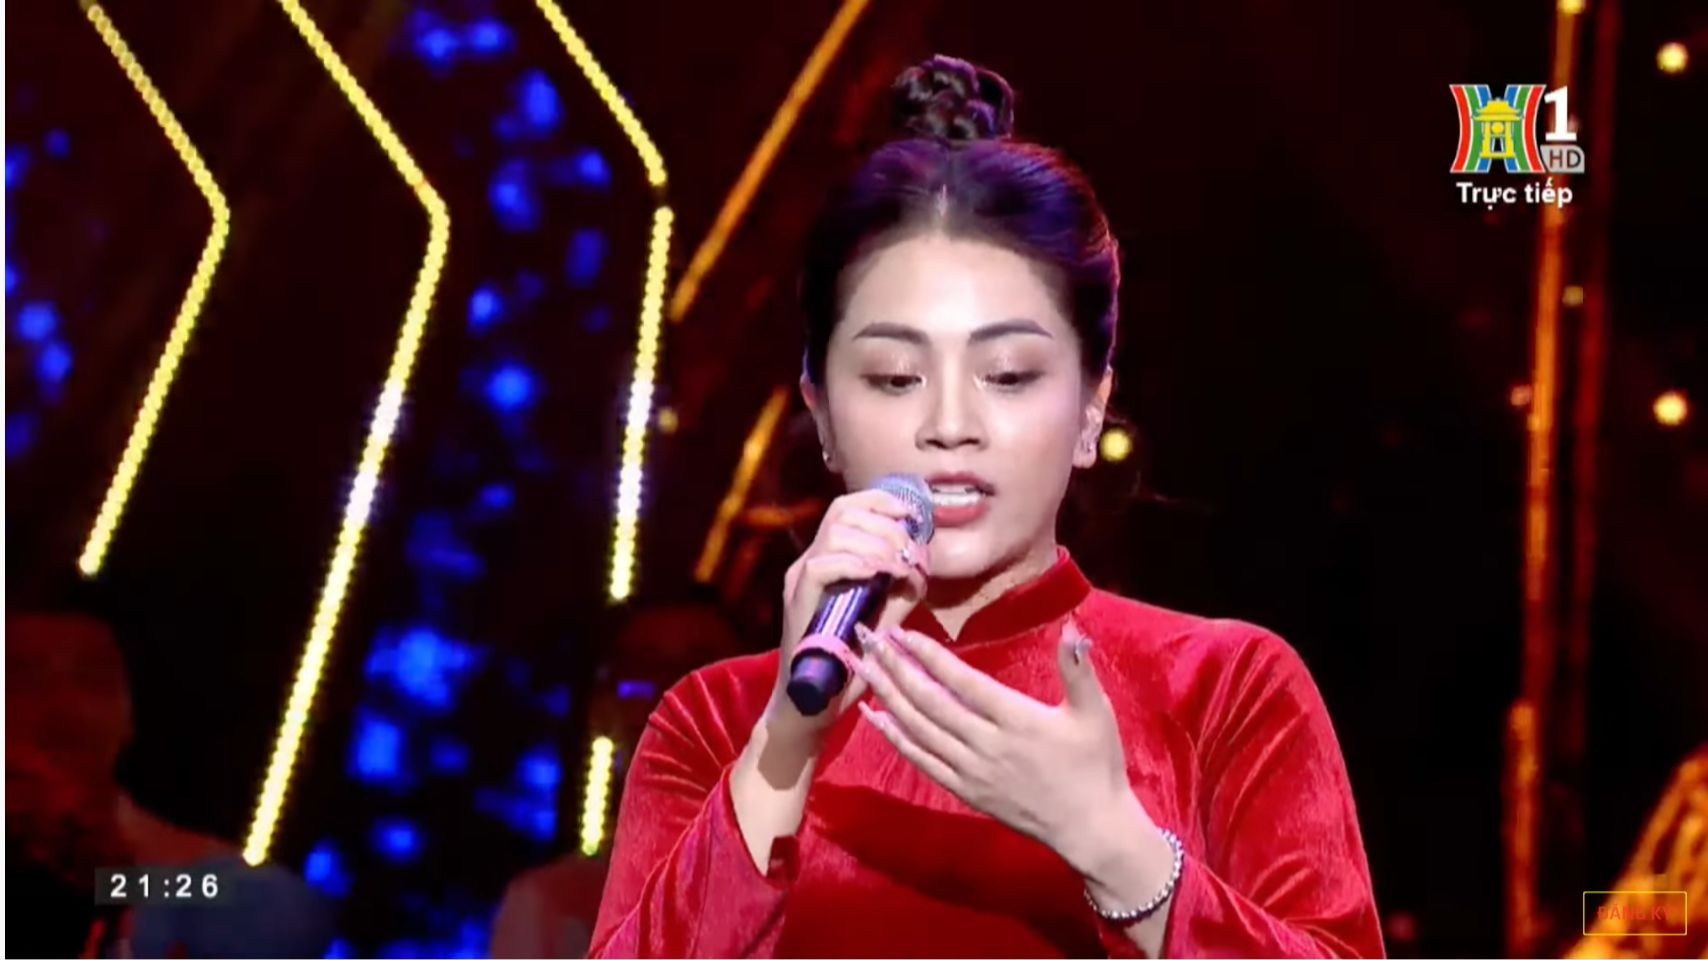 Ca sĩ Khánh Thy lên tiếng xin lỗi vì sự cố trên sóng truyền hình trực tiếp